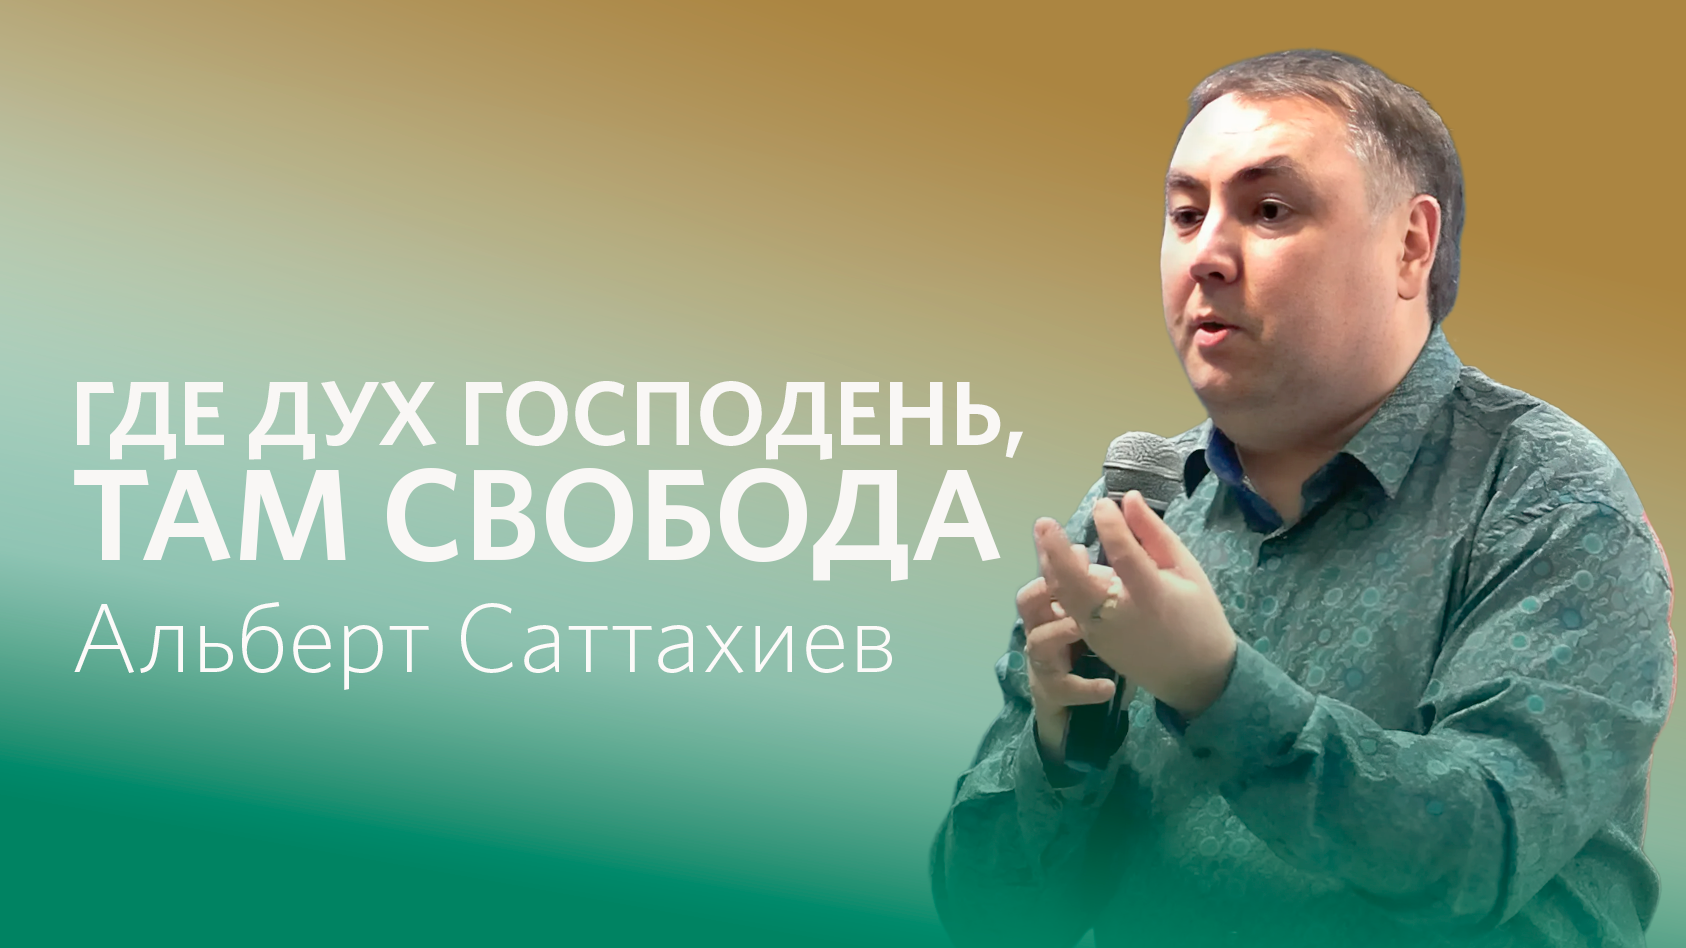 Альберт Саттахиев: Где Дух господень там свобода